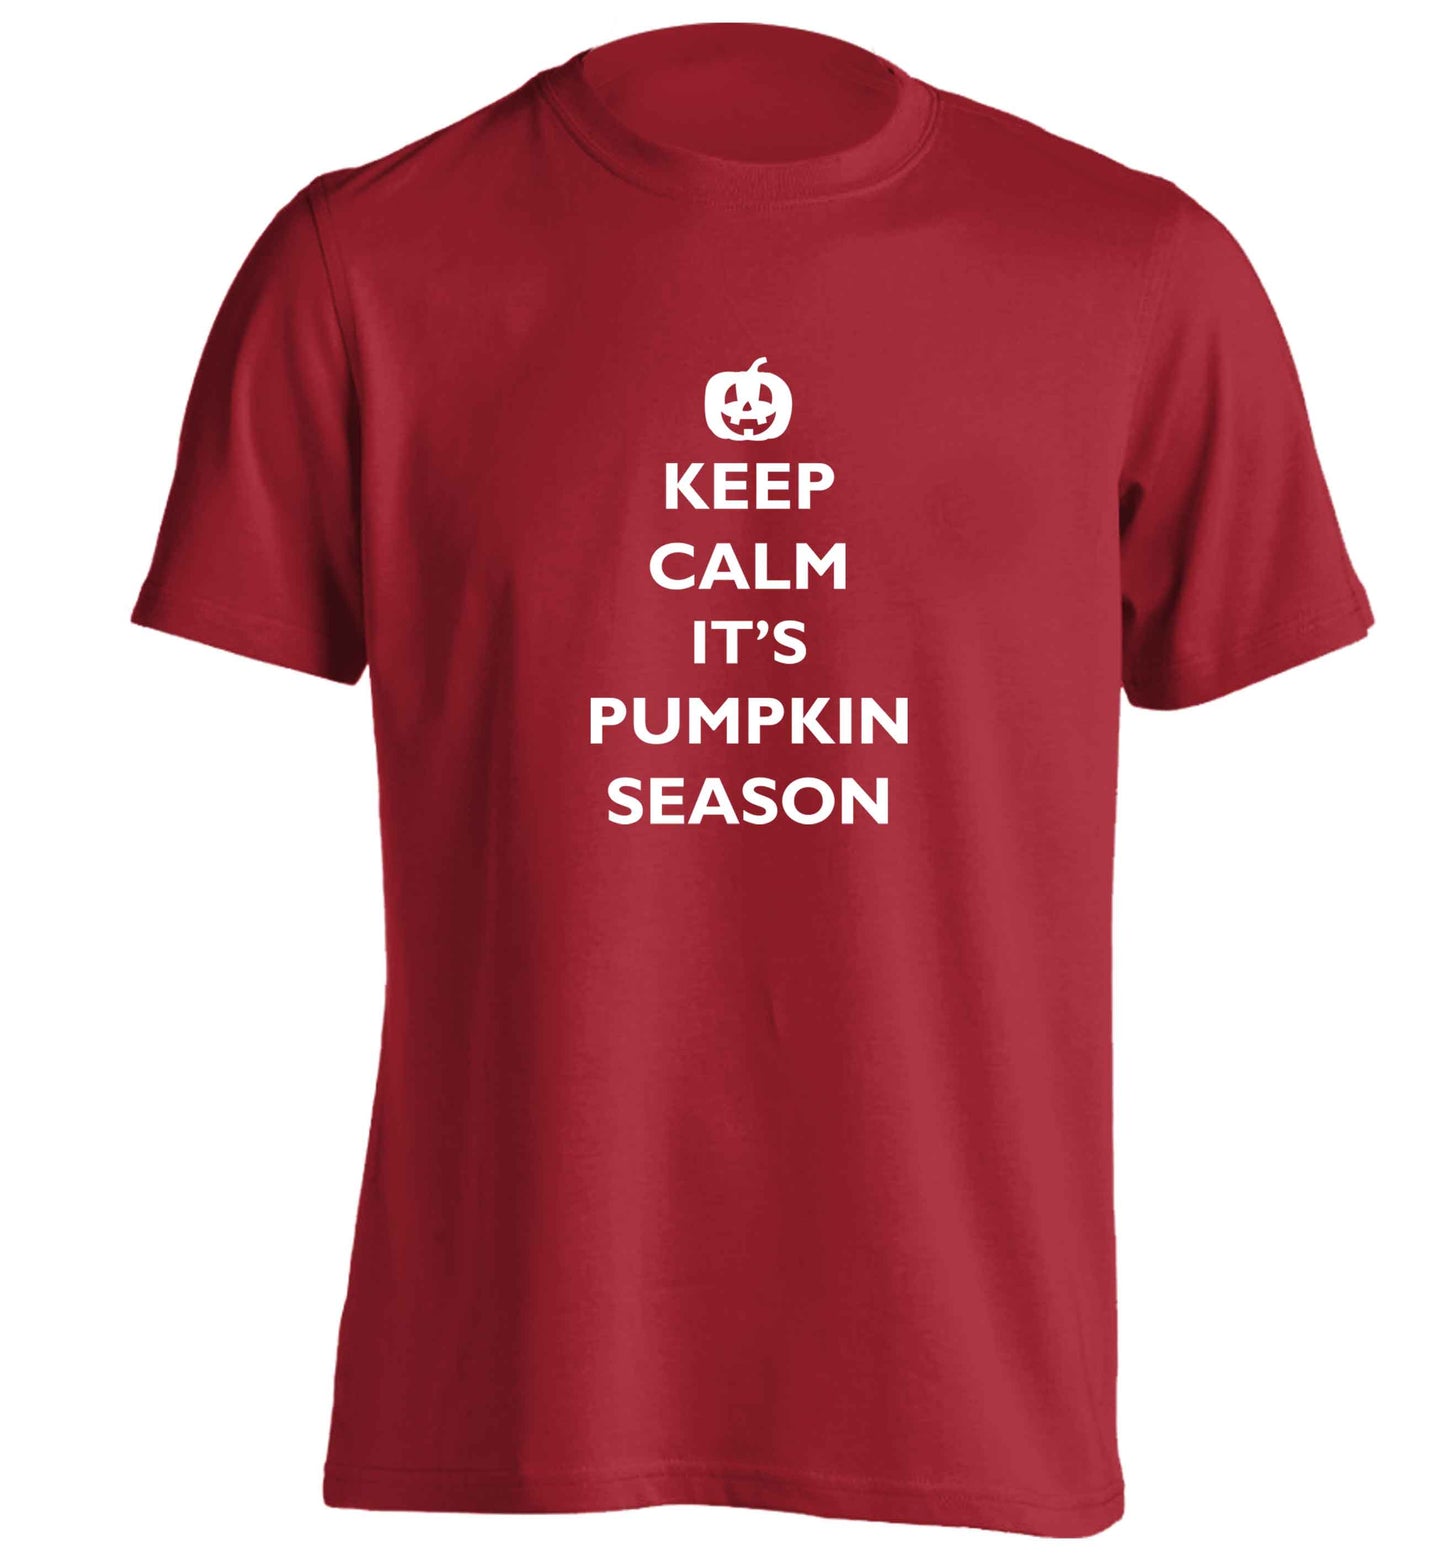 Calm Pumpkin Season adults unisex red Tshirt 2XL